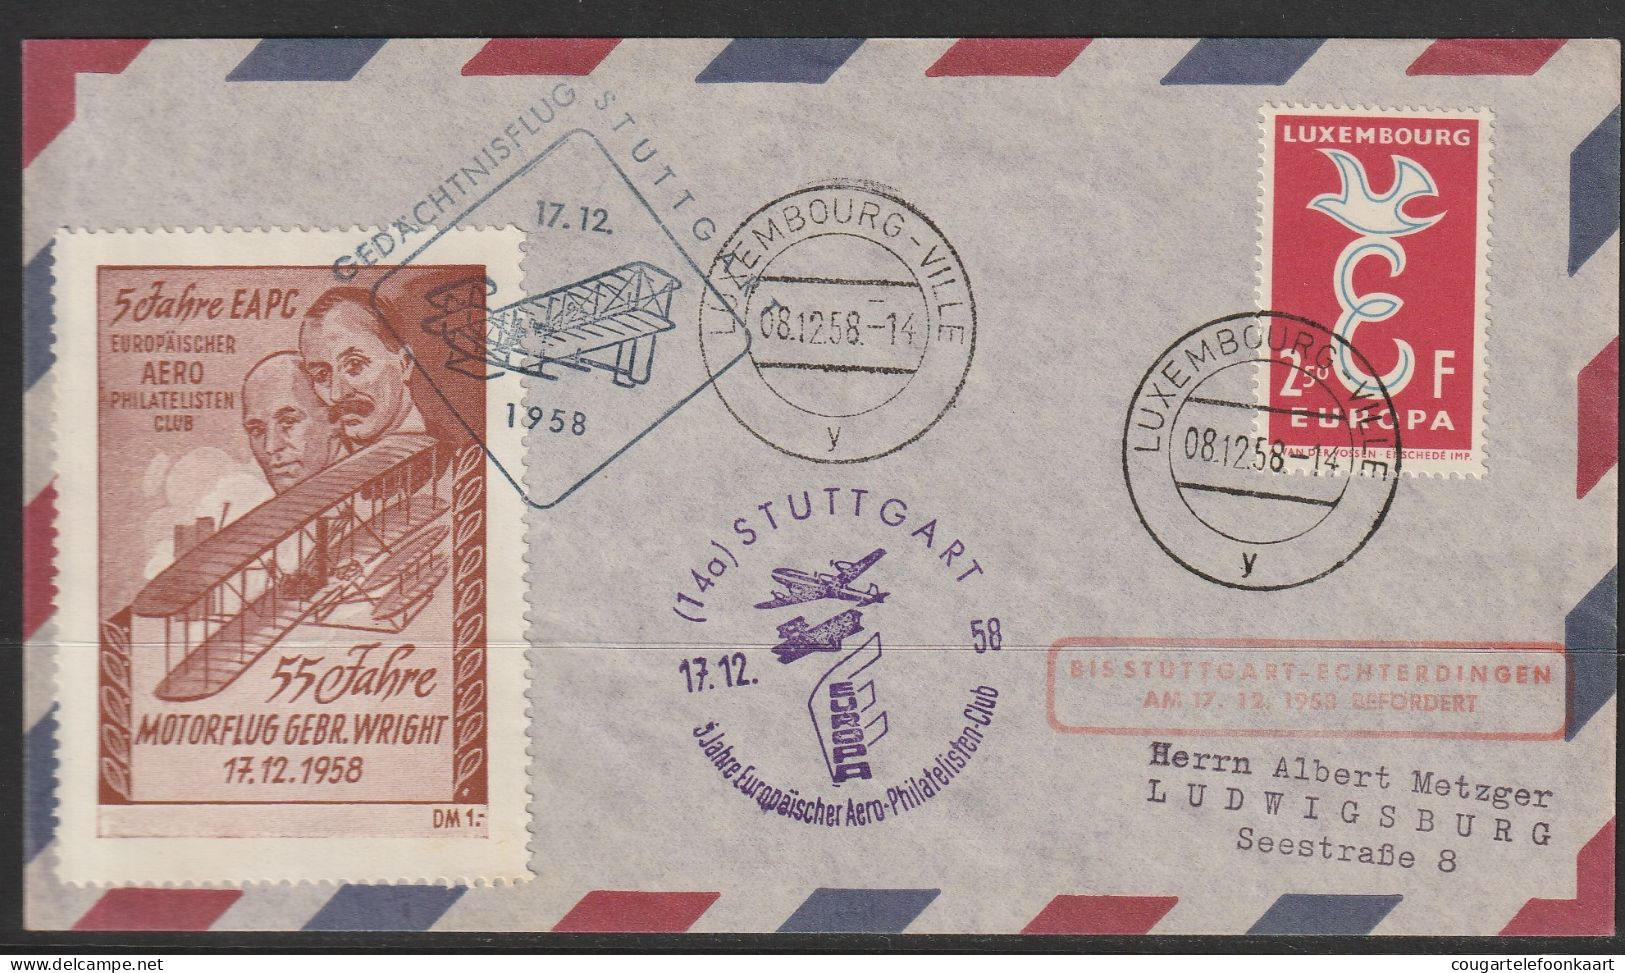 1958, Lufthansa, Gedächtnisflug Stuttgart, Luxembourg-Ville, Zuleitungspost, Wright - Covers & Documents